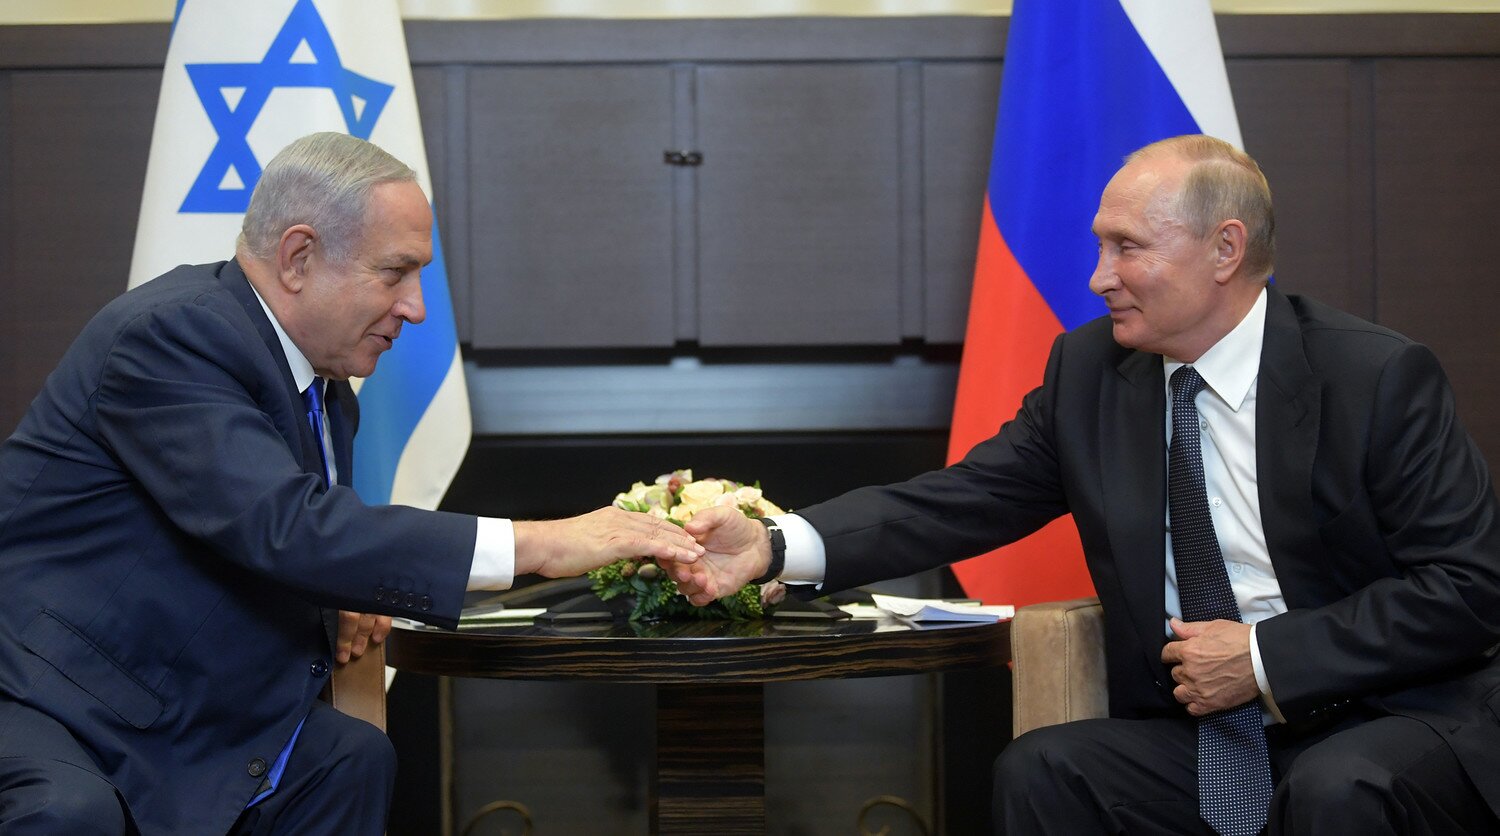 Нетаньяху назвал Путина "другом" после помилования израильтянки Иссахар